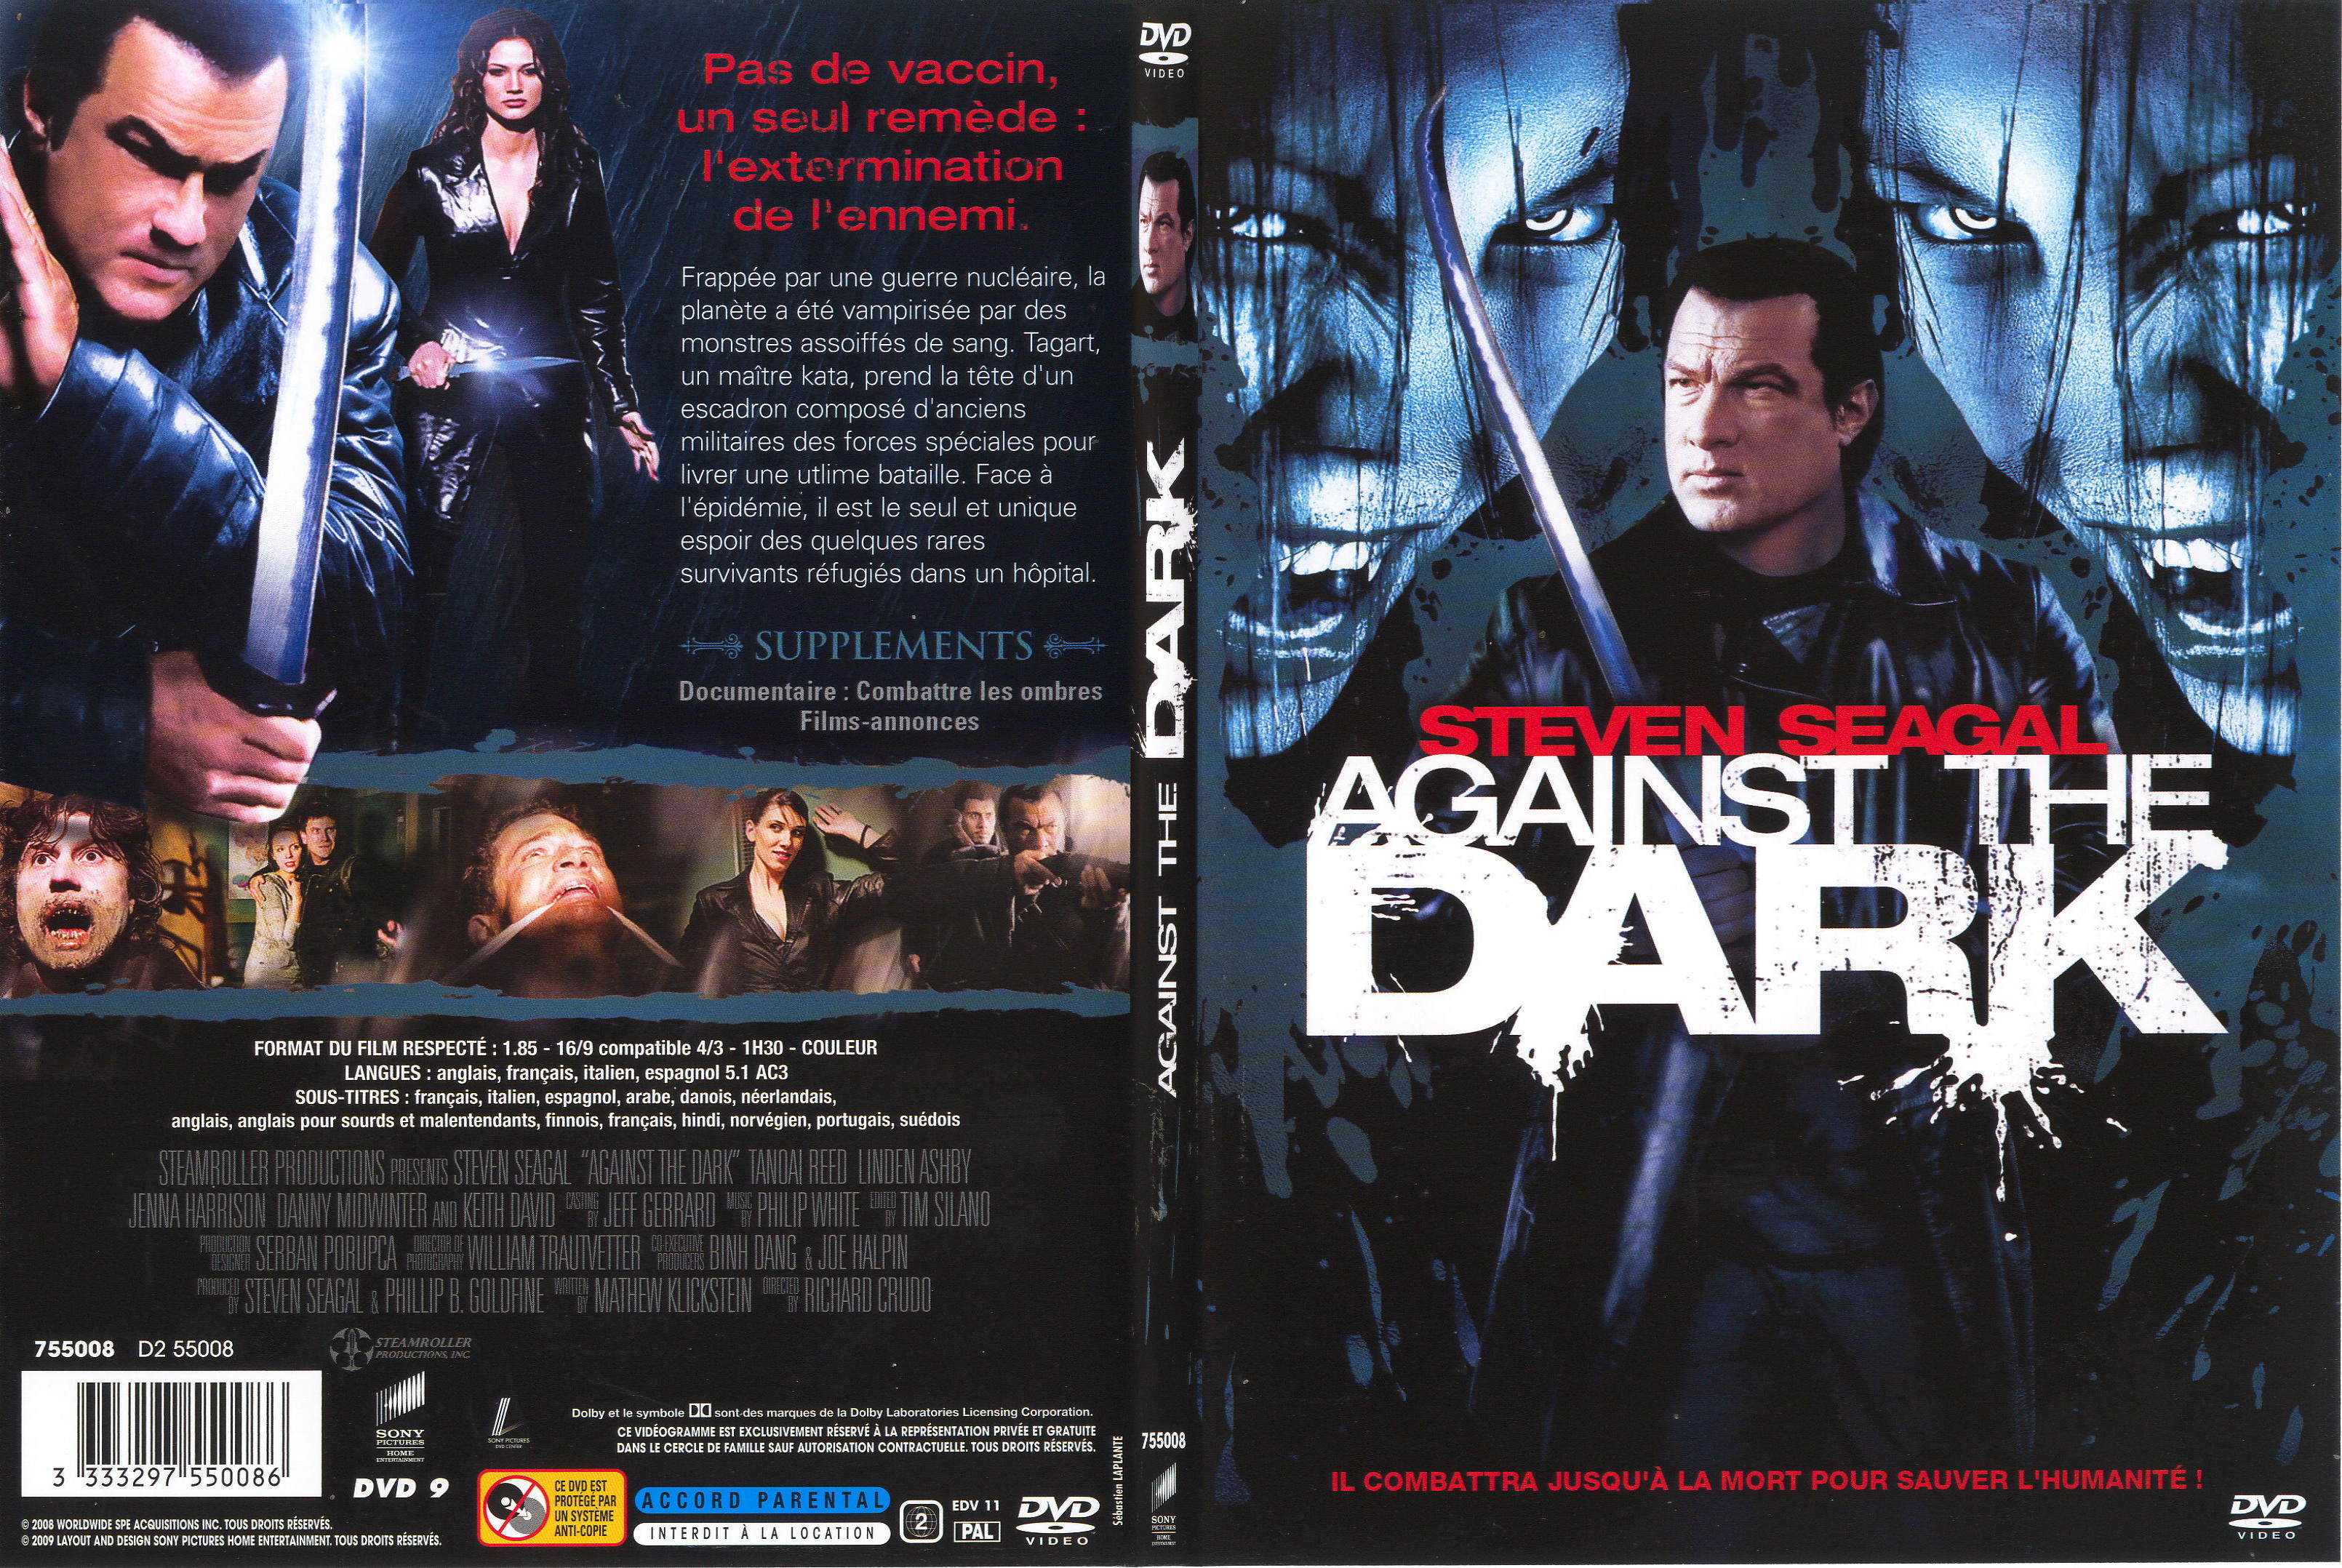 Jaquette DVD Against the dark - SLIM